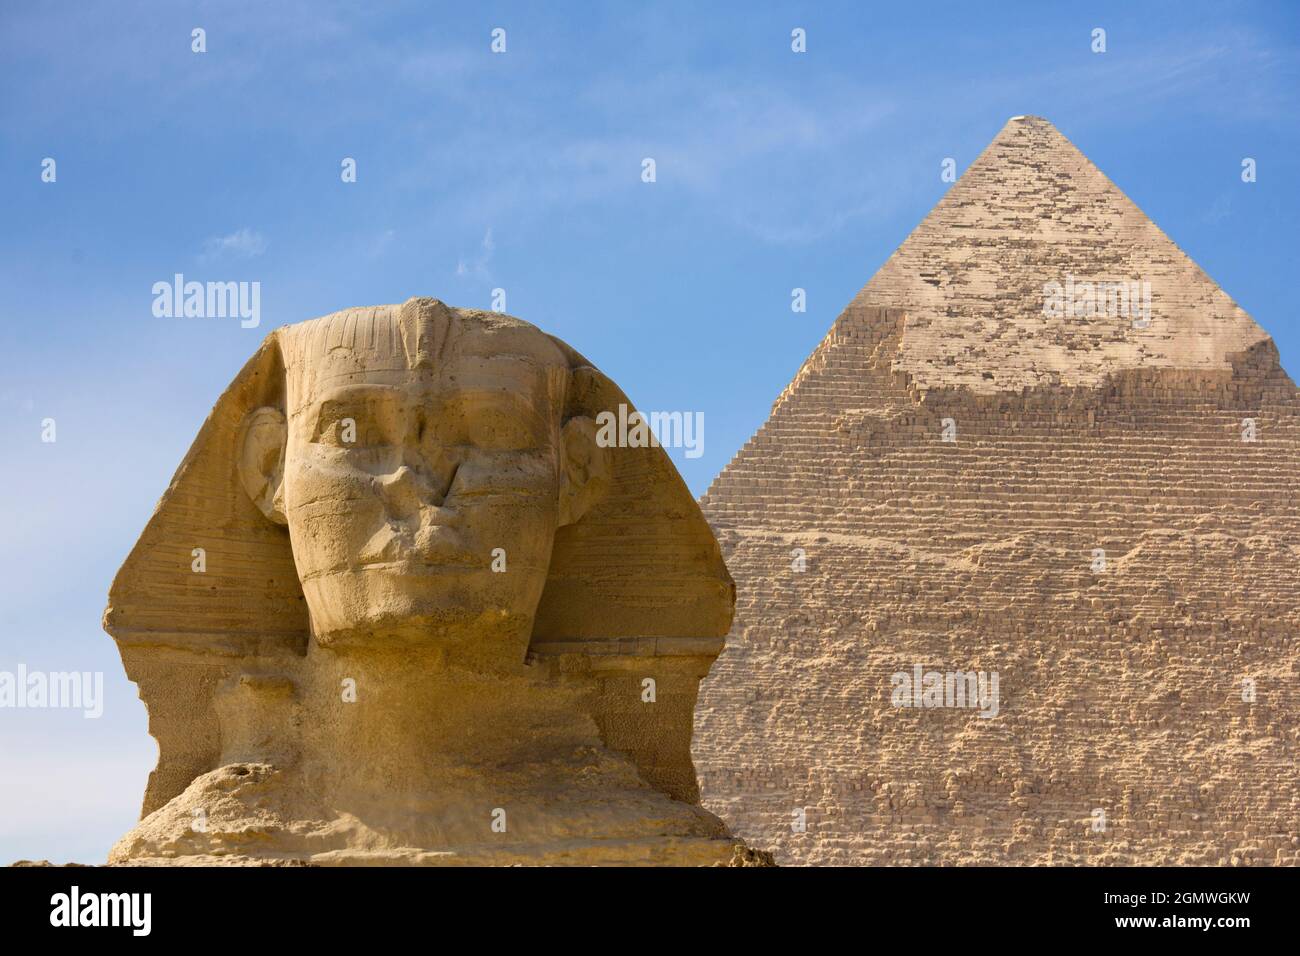 Cairo, Egitto - 7 dicembre 2010; Una sfinge è una creatura mitica con la testa di un essere umano e il corpo di un leone. La rappresentazione più famosa di un tale c Foto Stock